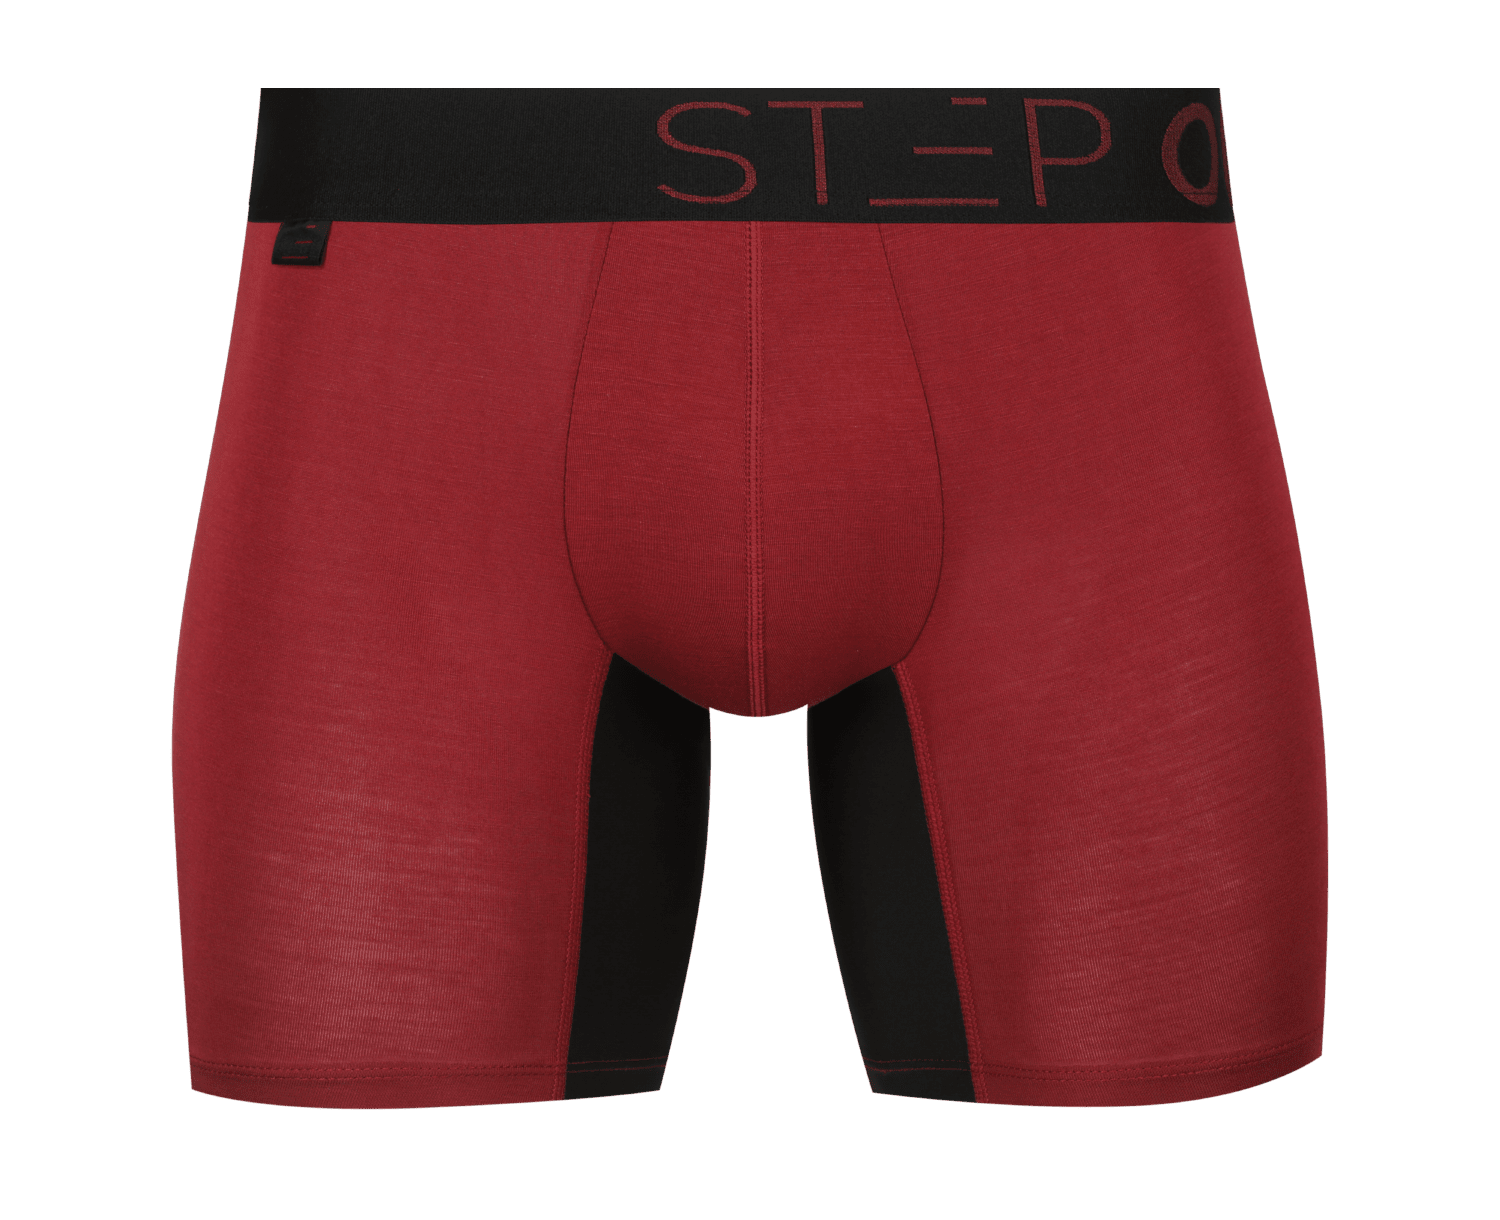 Boxer Brief - Baked Beans | Step One Underwear